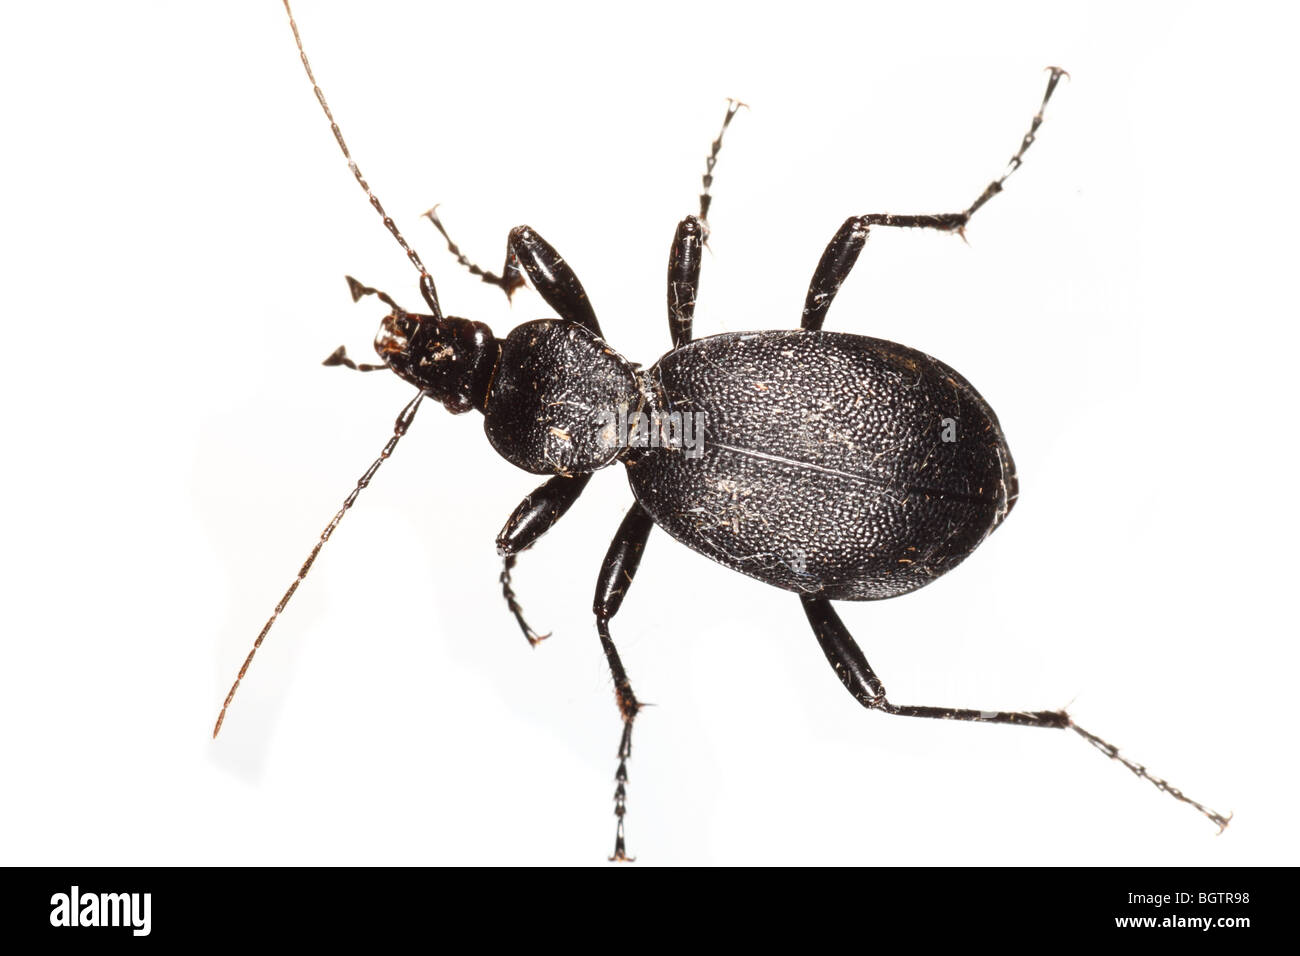 Schnecke-Essen Boden Käfer, Cychrus Caraboides. Leben Sie Insekt vor einem weißen Hintergrund auf ein tragbares Studio fotografiert. Stockfoto